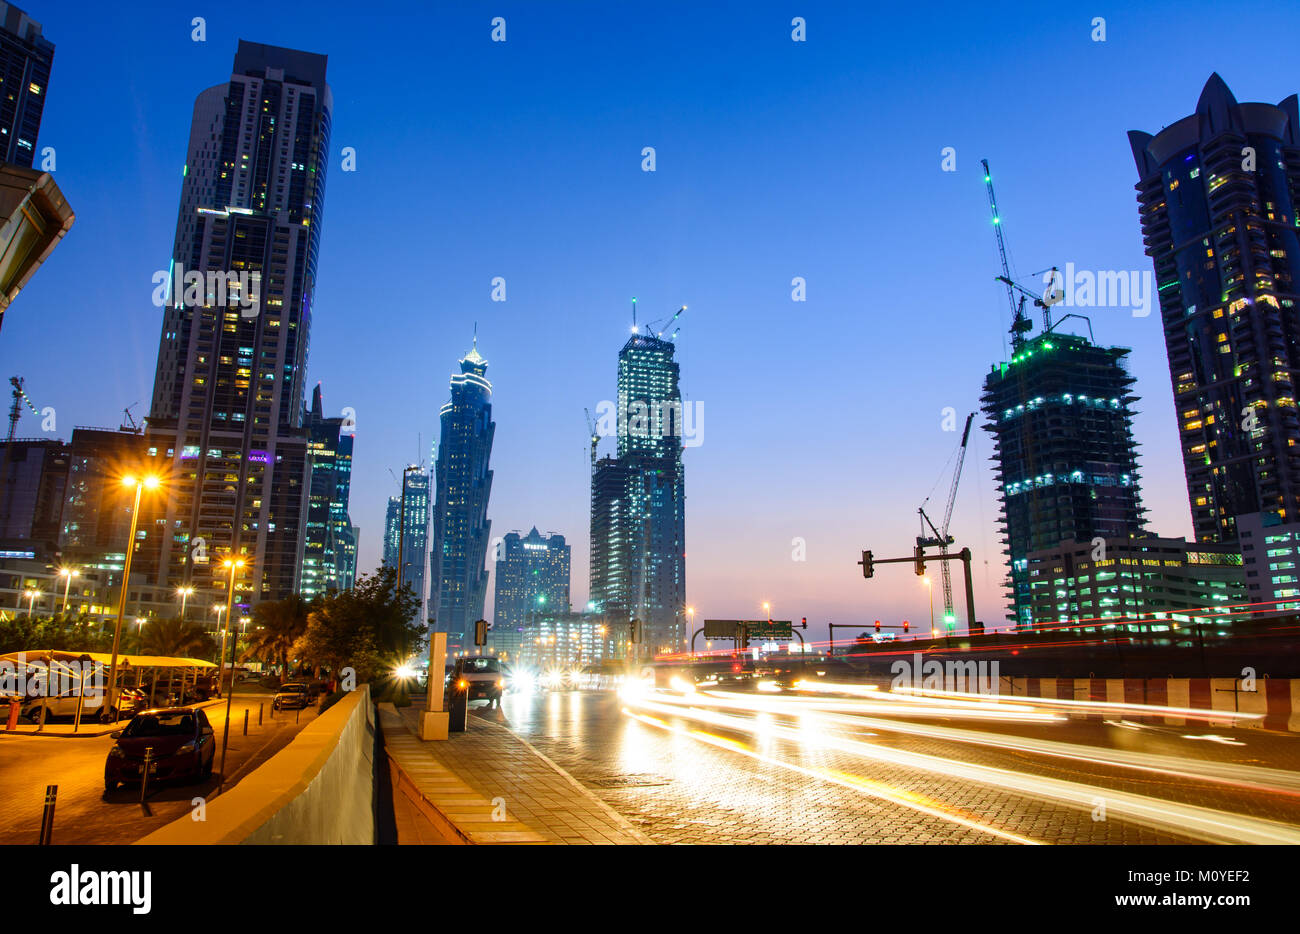 DUBAI, VEREINIGTE ARABISCHE EMIRATE - 18. OKTOBER 2017: Dubai Nacht Stadt Szene in der Bay Area mit hellen und modernen Umgebung. Stockfoto